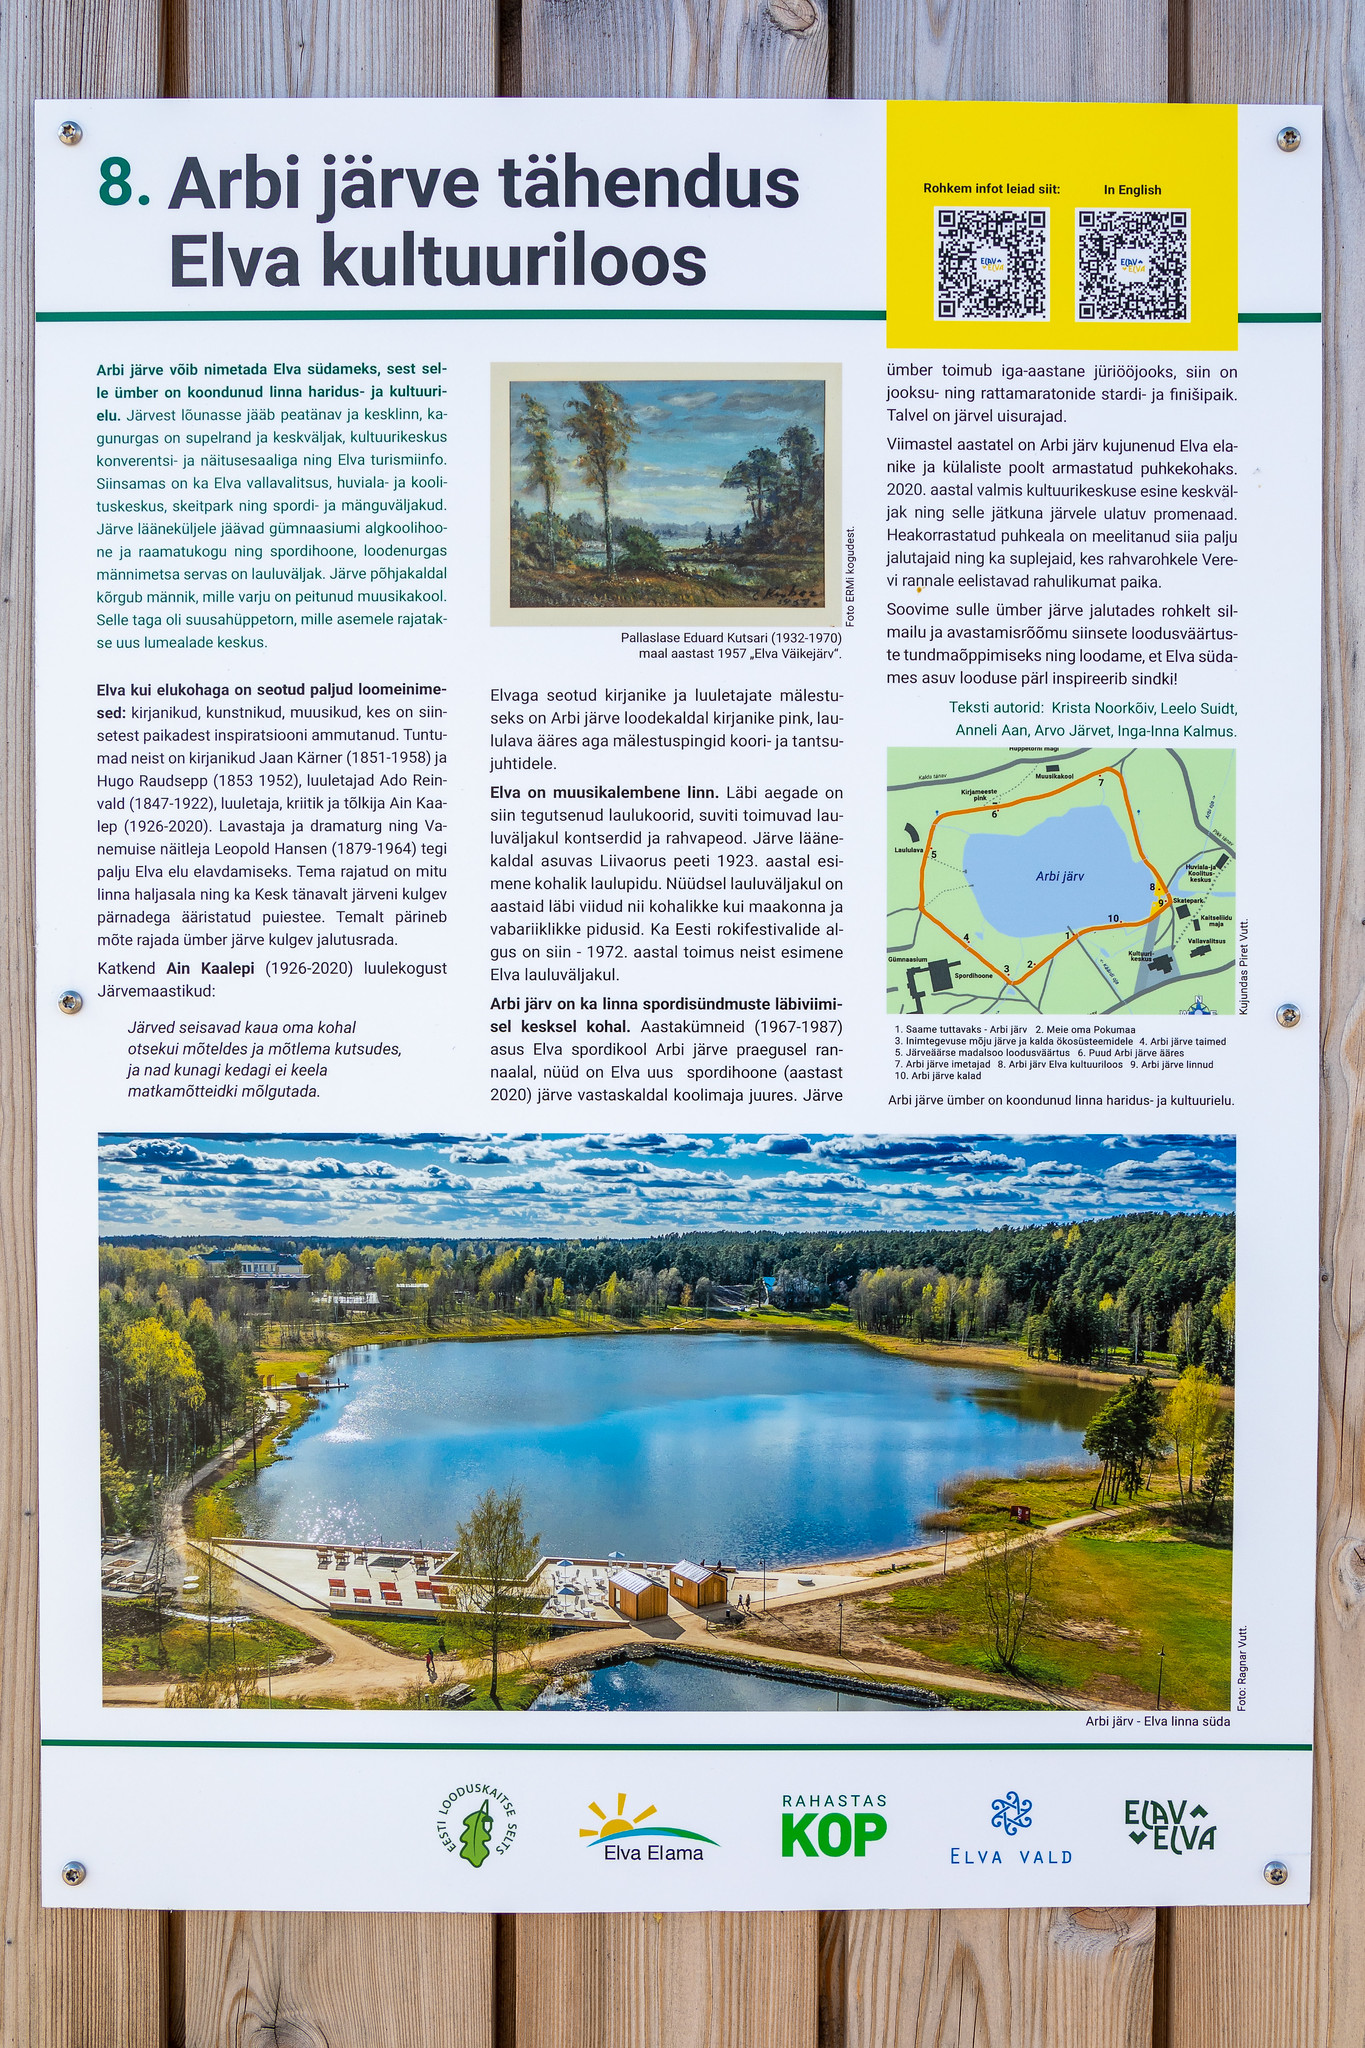 Arbi ezera nozīme Elvas kultūras vēsturē - informācija uz stenda